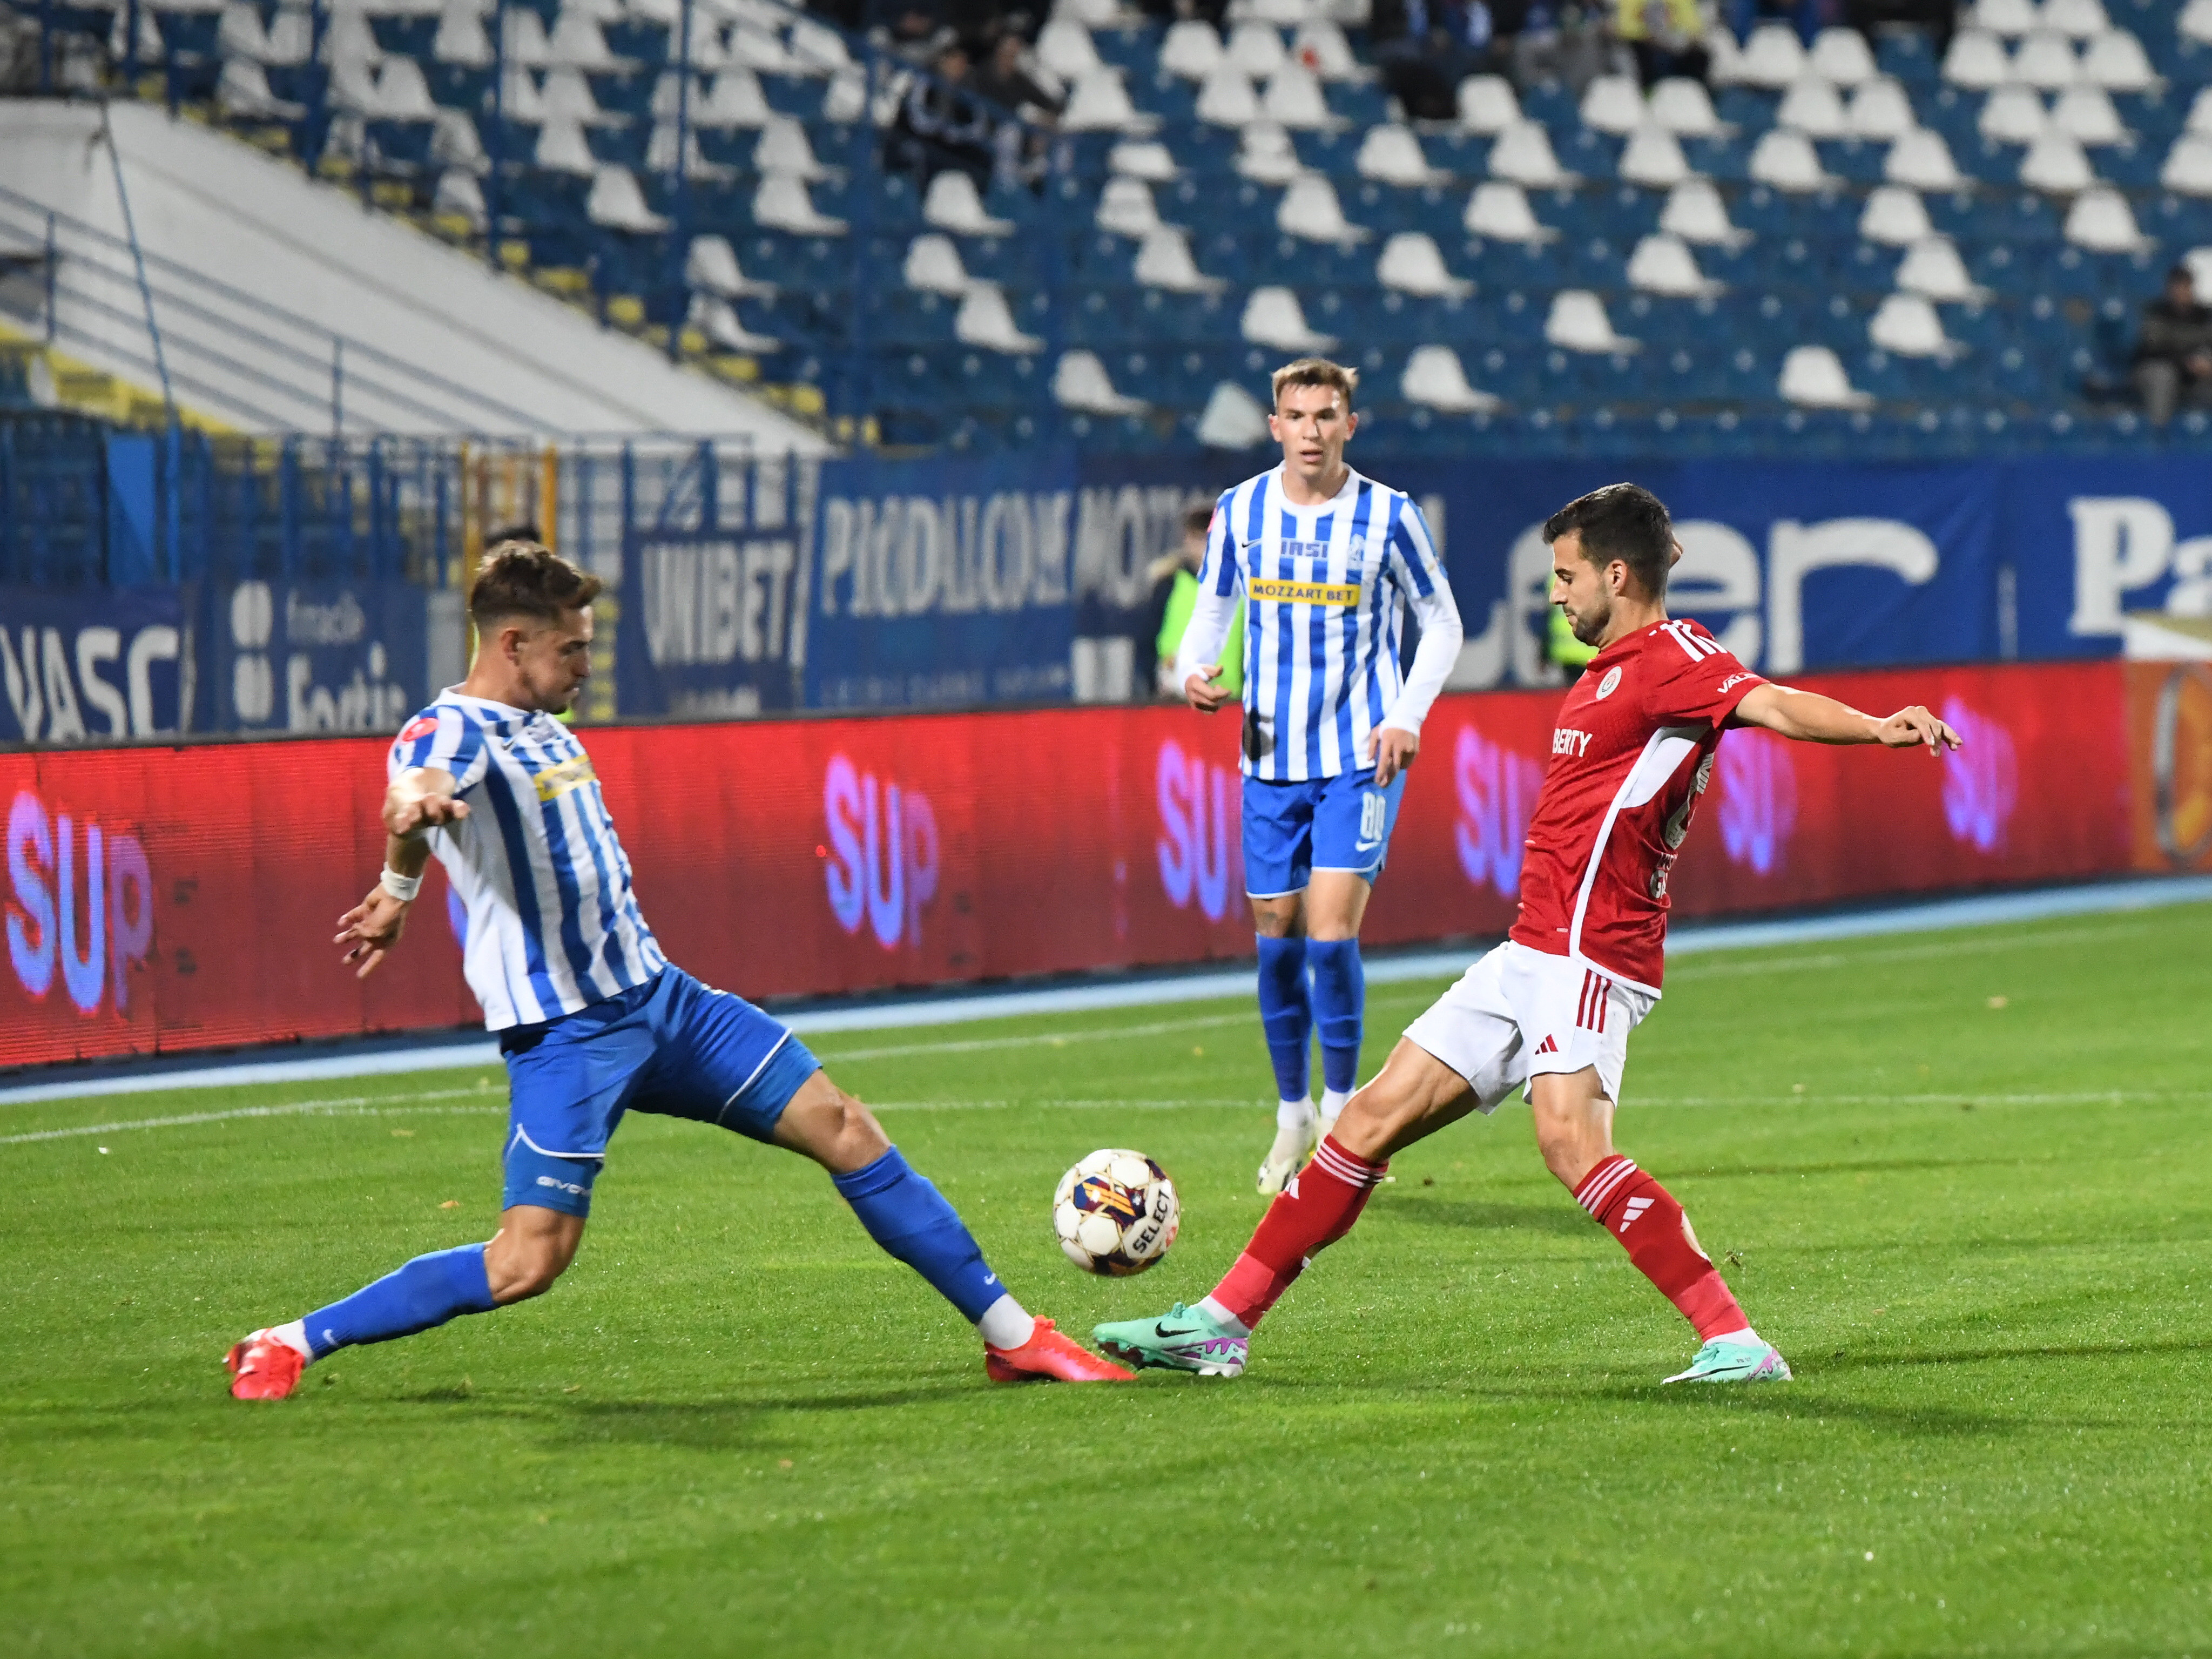 Oțelul - Poli Iași, LIVE VIDEO, 17:00, Digi Sport 1. Derby de Moldova în play-out